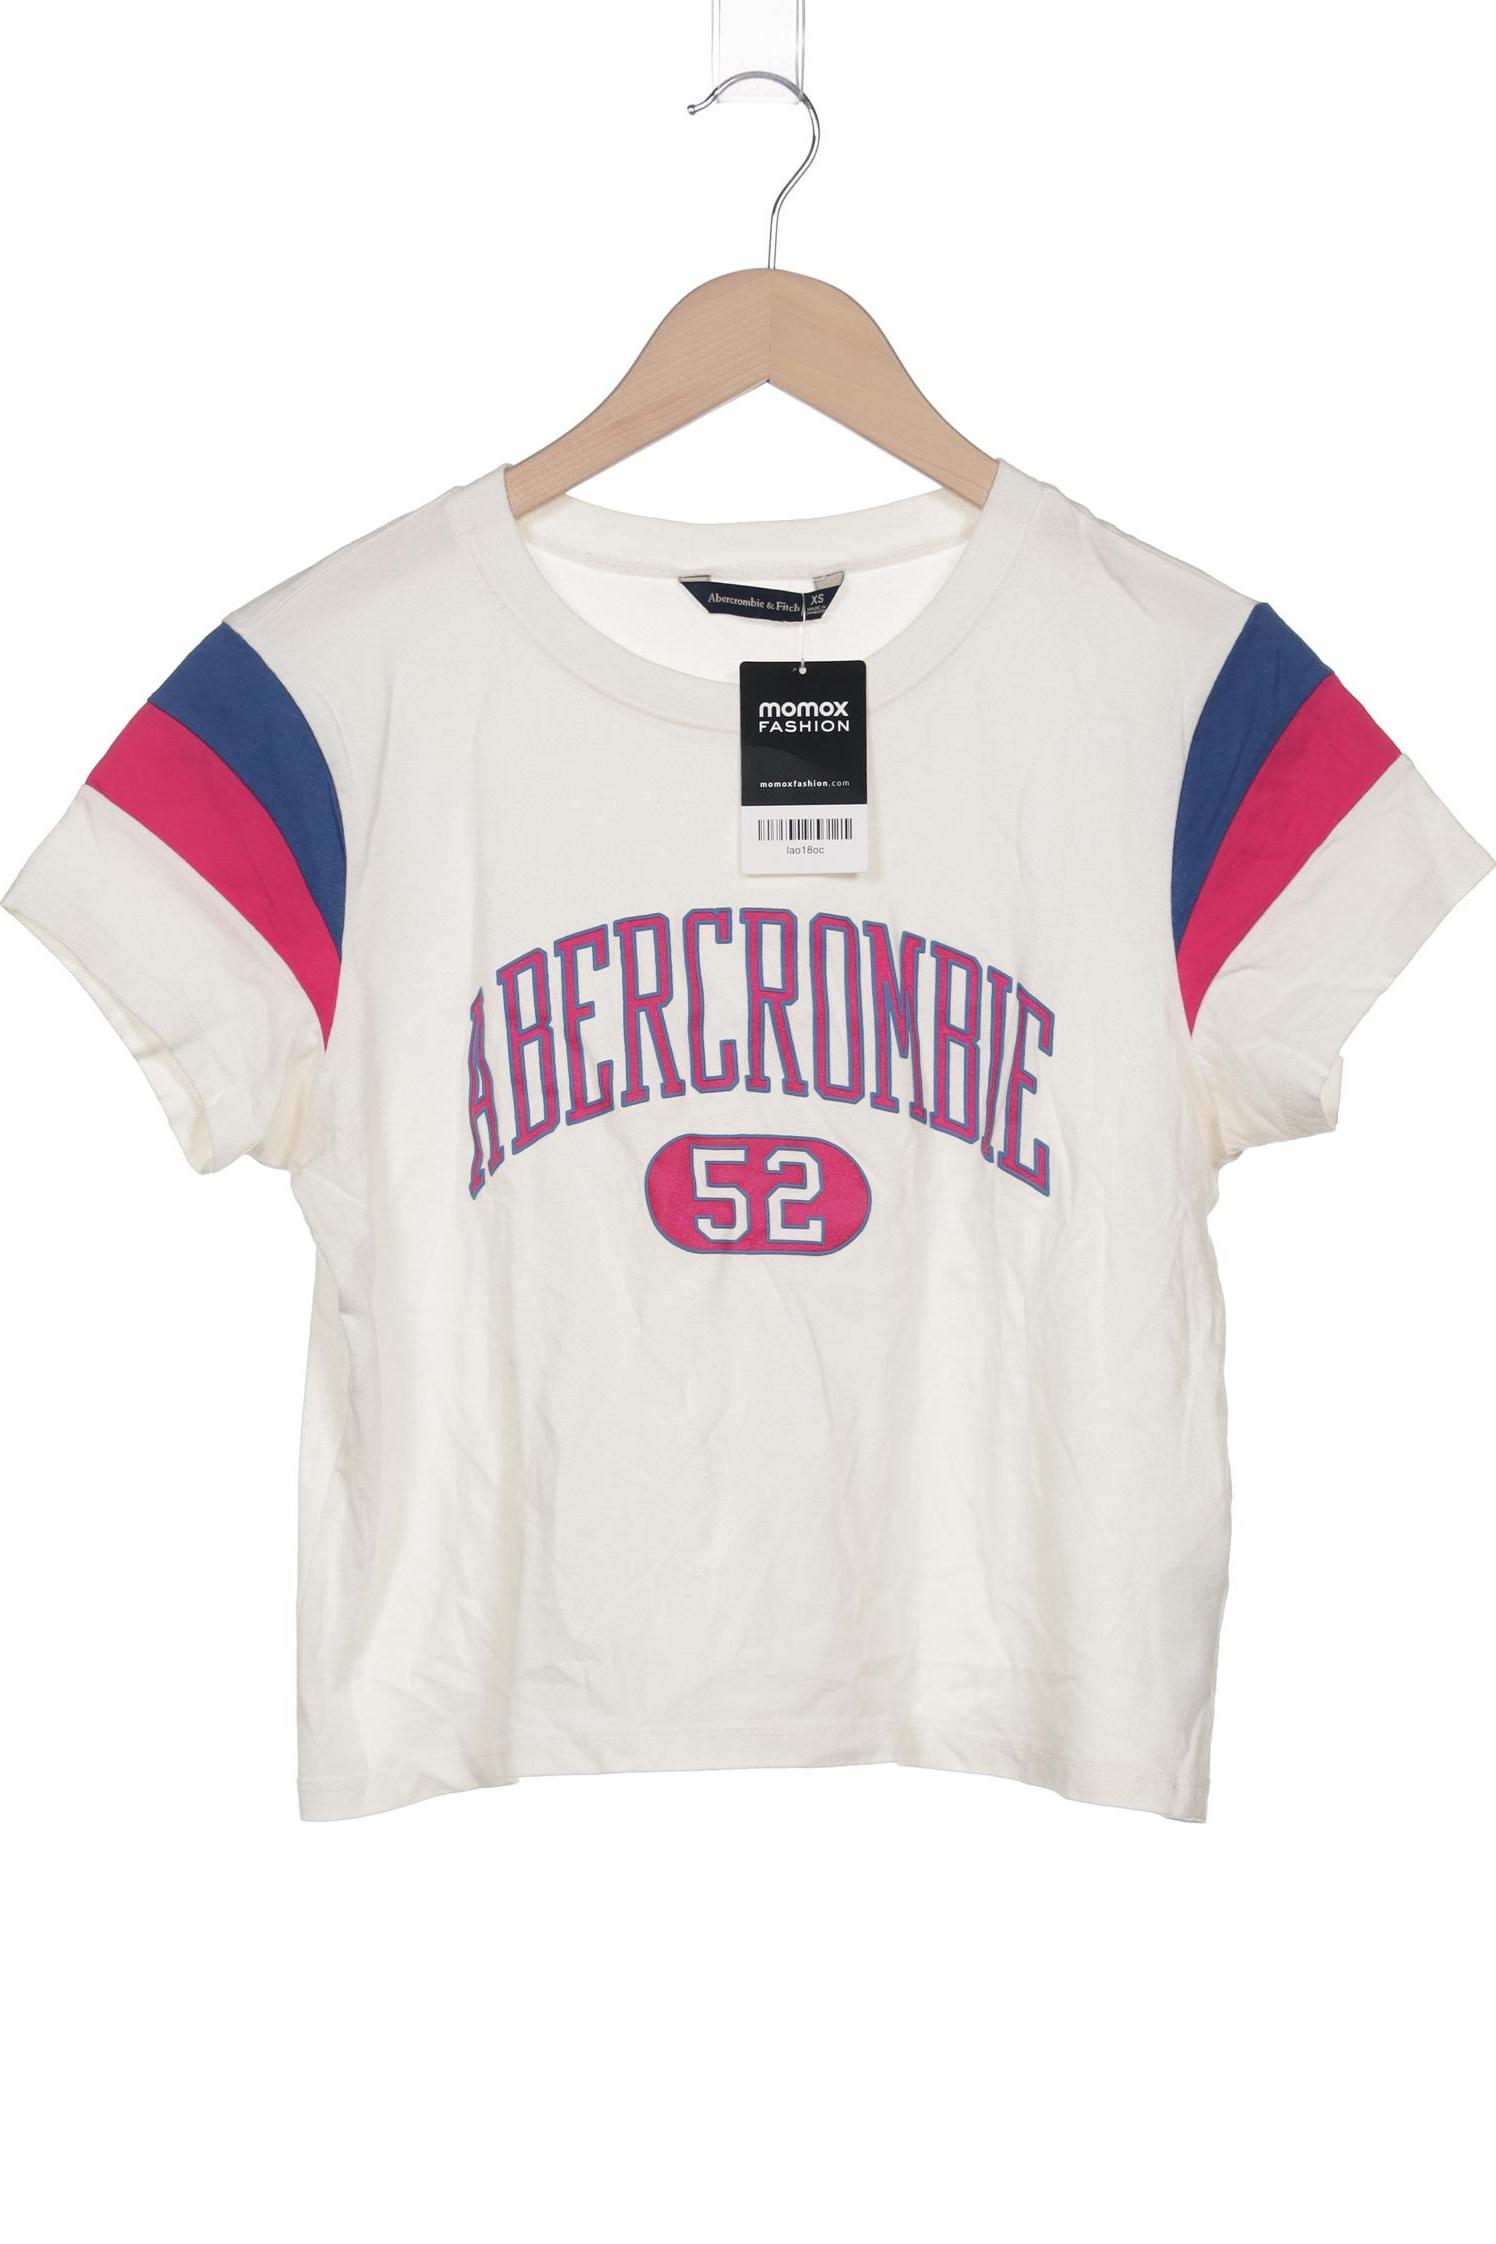 Abercrombie & Fitch Damen T-Shirt, cremeweiß, Gr. 34 von Abercrombie & Fitch